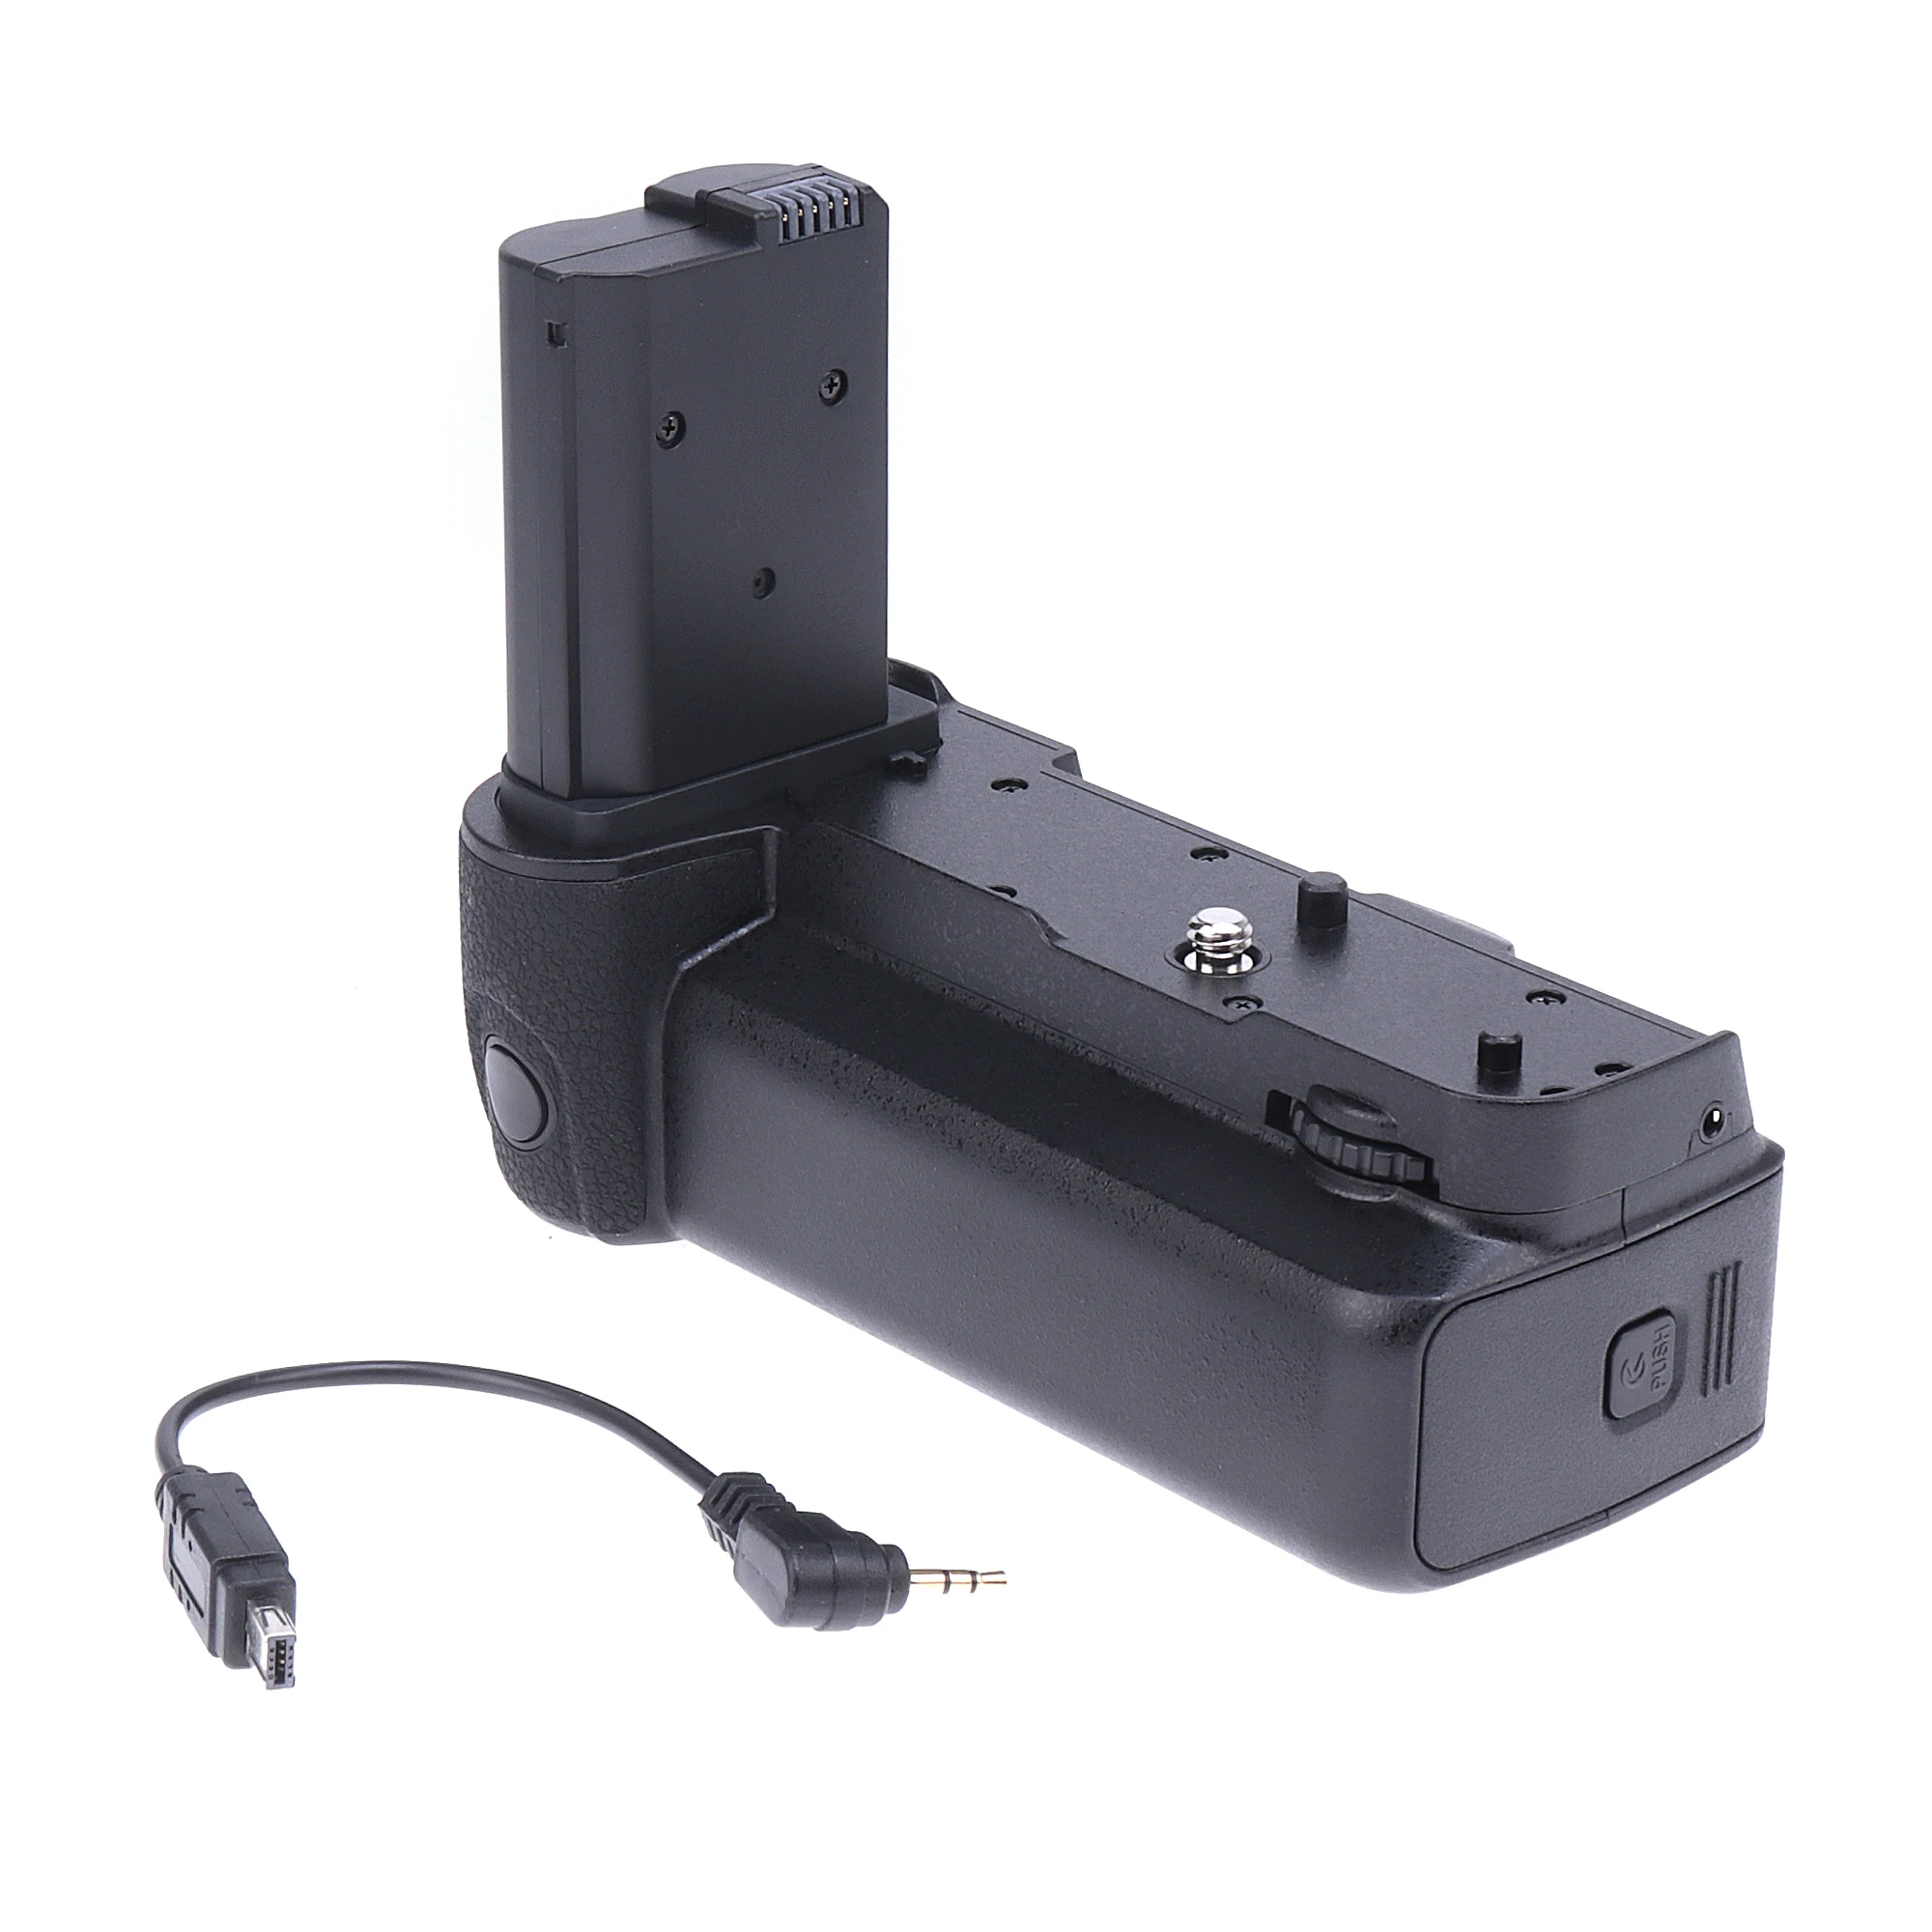 

Vertical Battery Grip Handle Holder Pack For Nikon Z6/Z7 Camera for EN-EL15B Battery